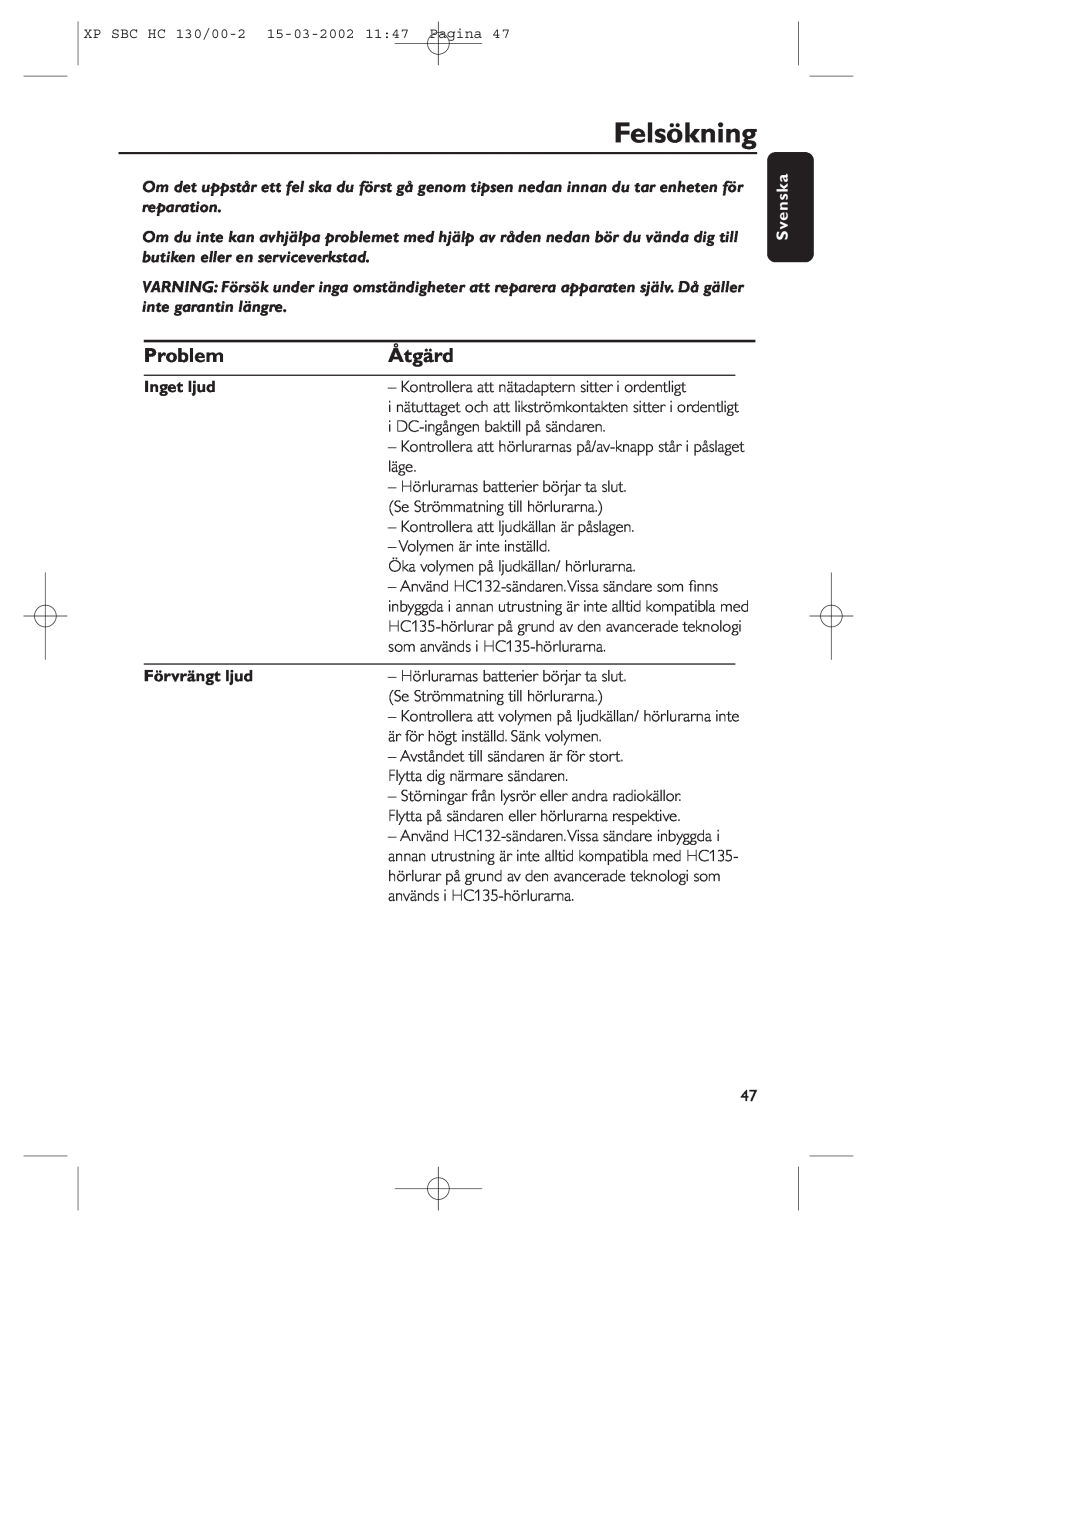 Philips SBC HC130 manual Felsökning, Problem, Åtgärd, Inget ljud, Förvrängt ljud, Svenska 